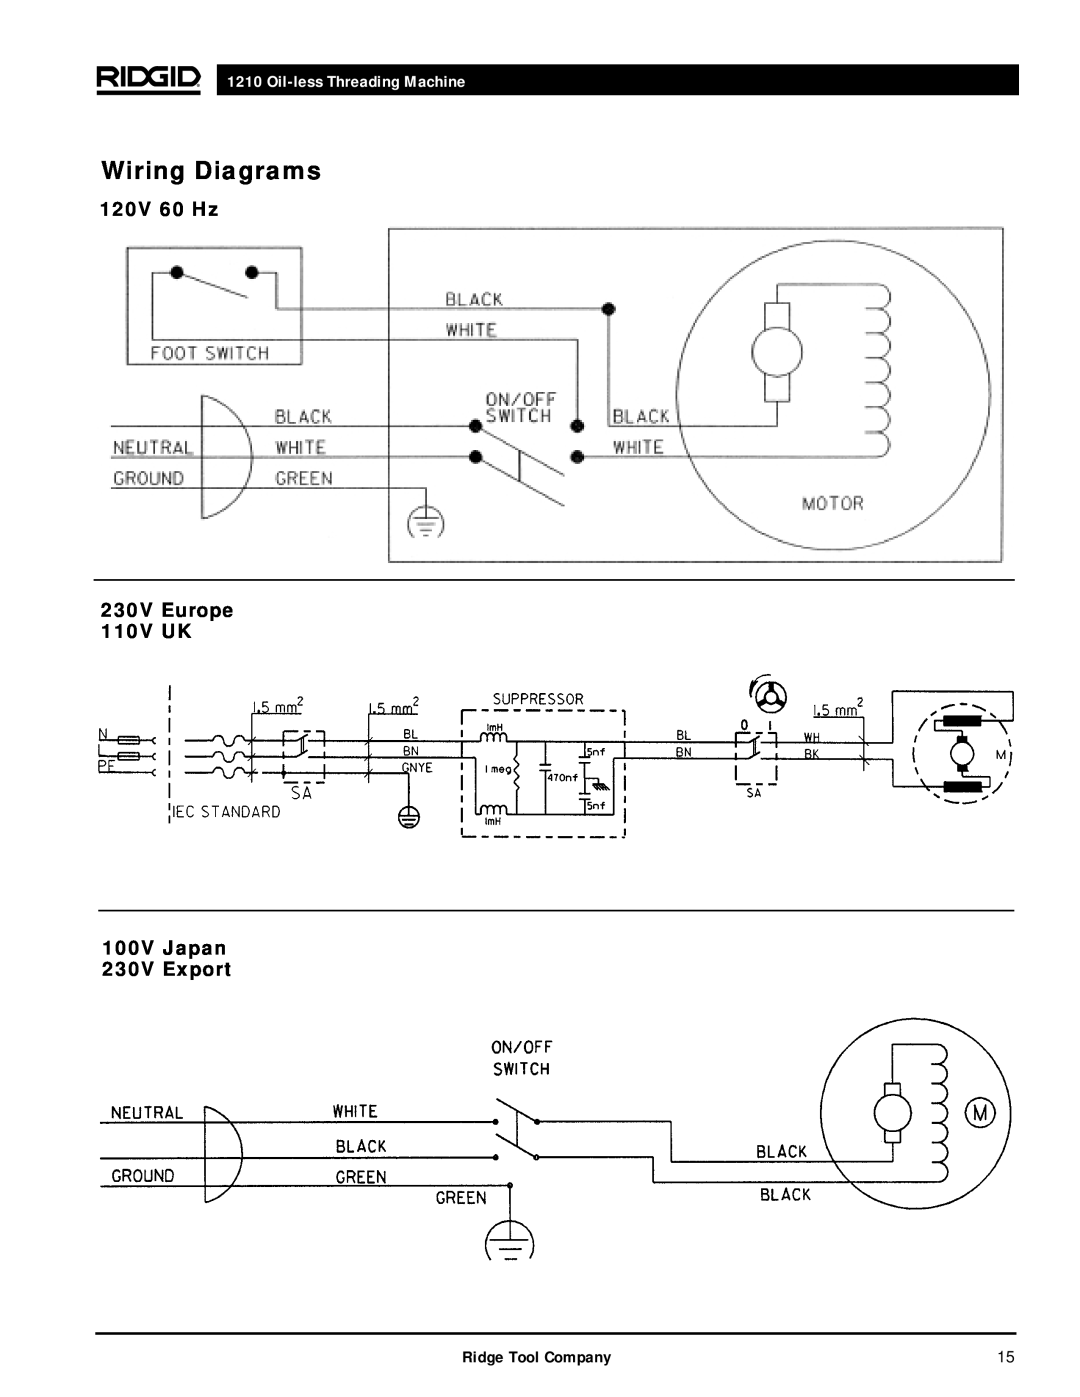 RIDGID 1210 manual Wiring Diagrams, 120V 60 Hz 230V Europe 110V UK 100V Japan 230V Export, Oil-less Threading Machine 